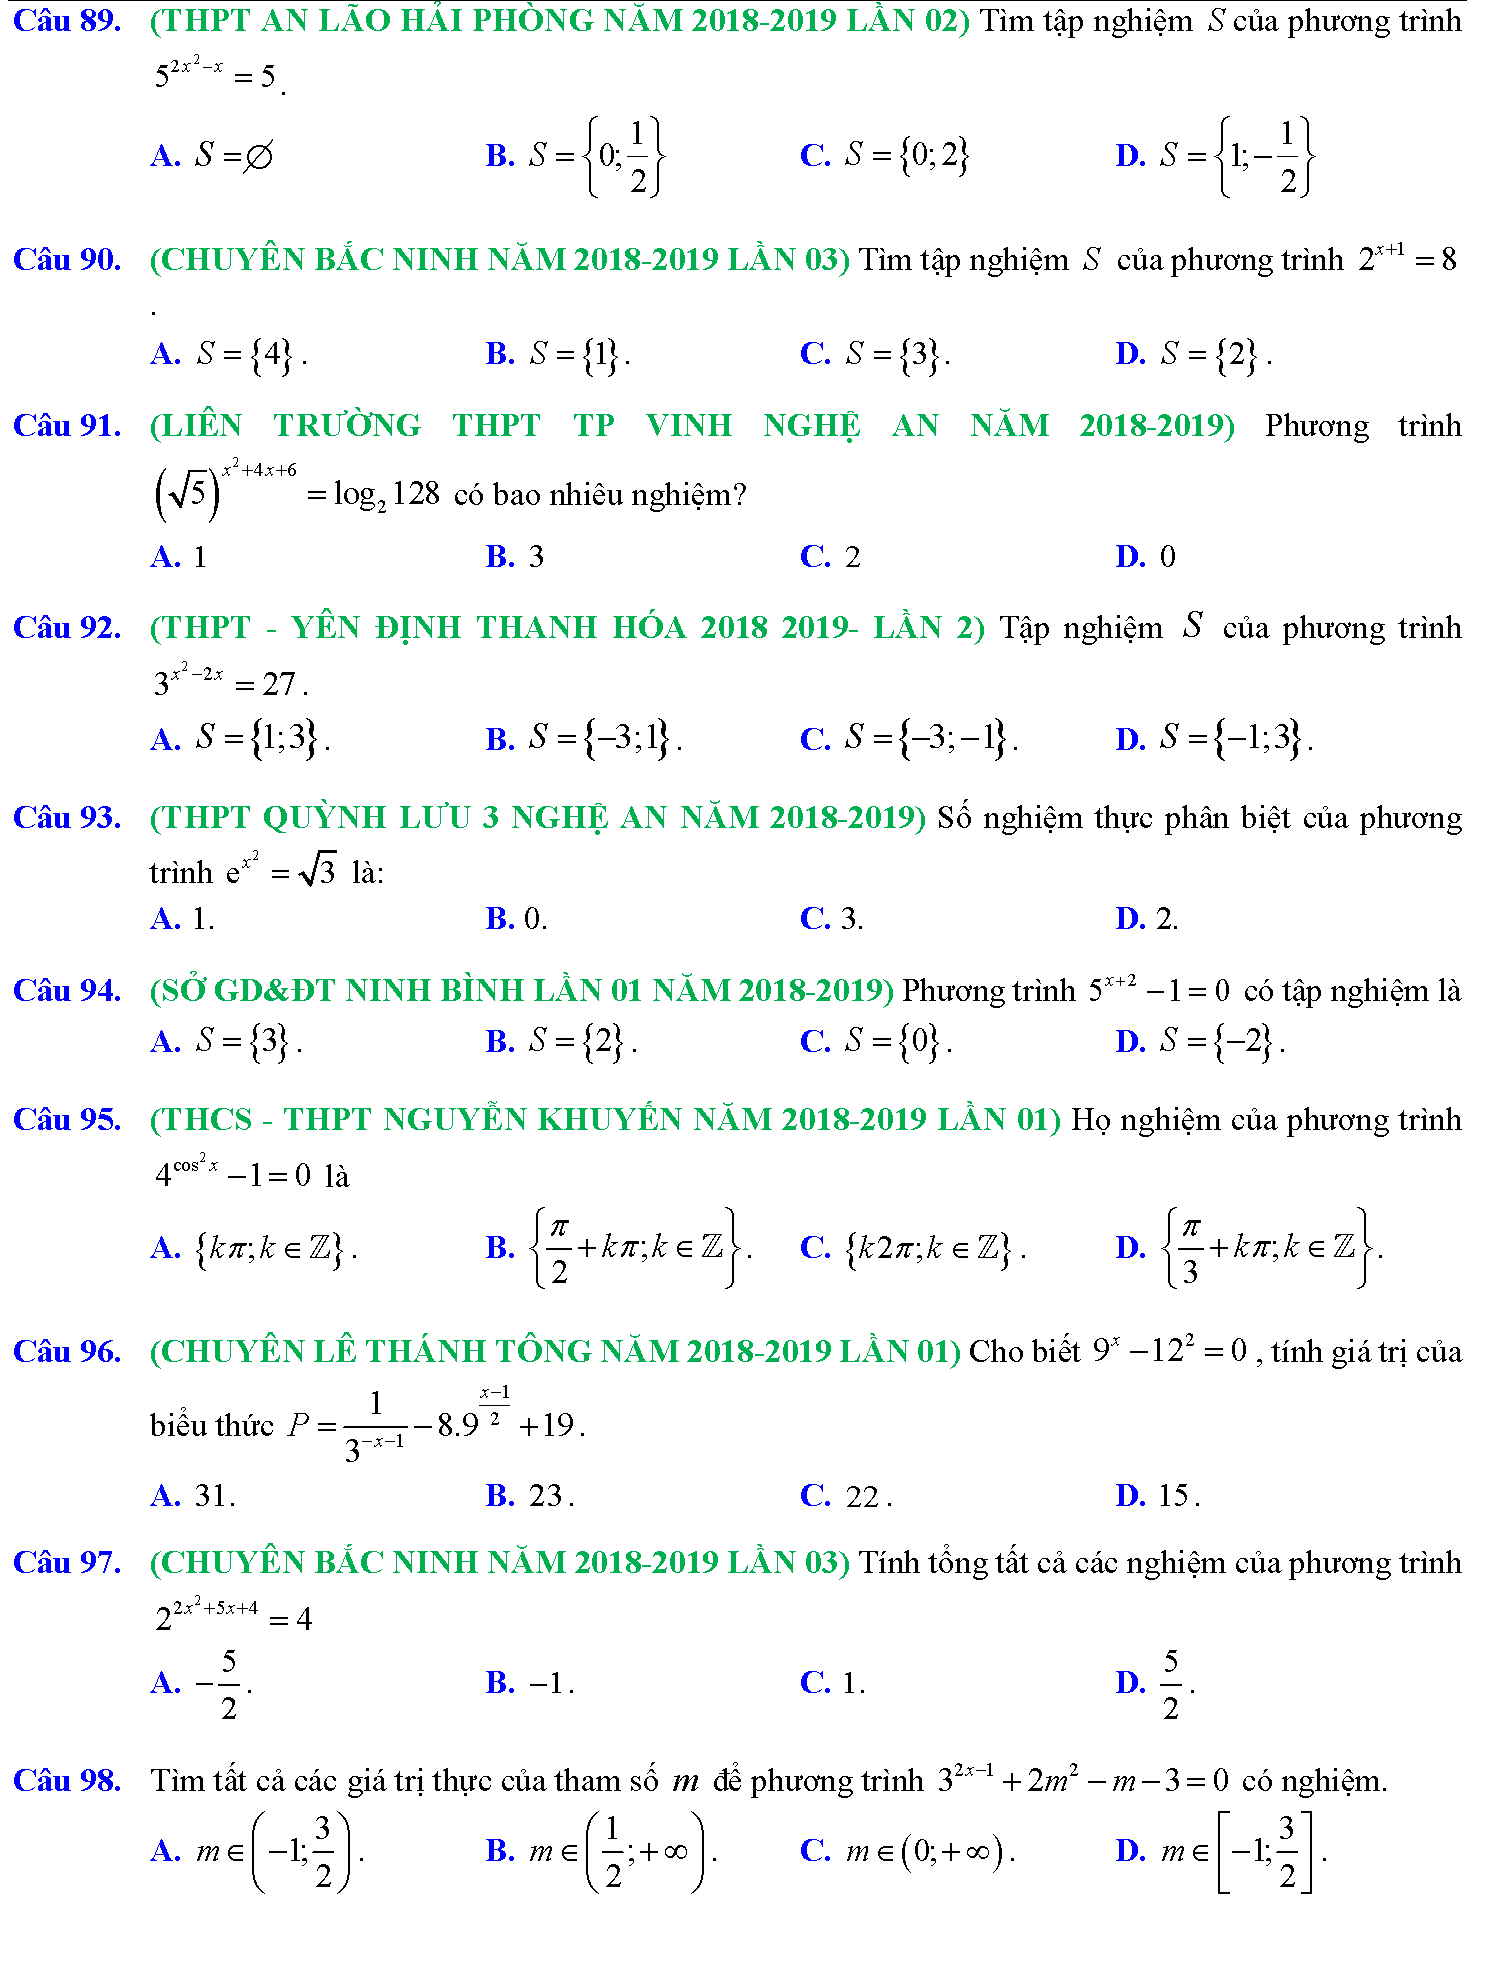 Phương trình mũ, phương trình logarit trong kỳ thi THPTQG 12